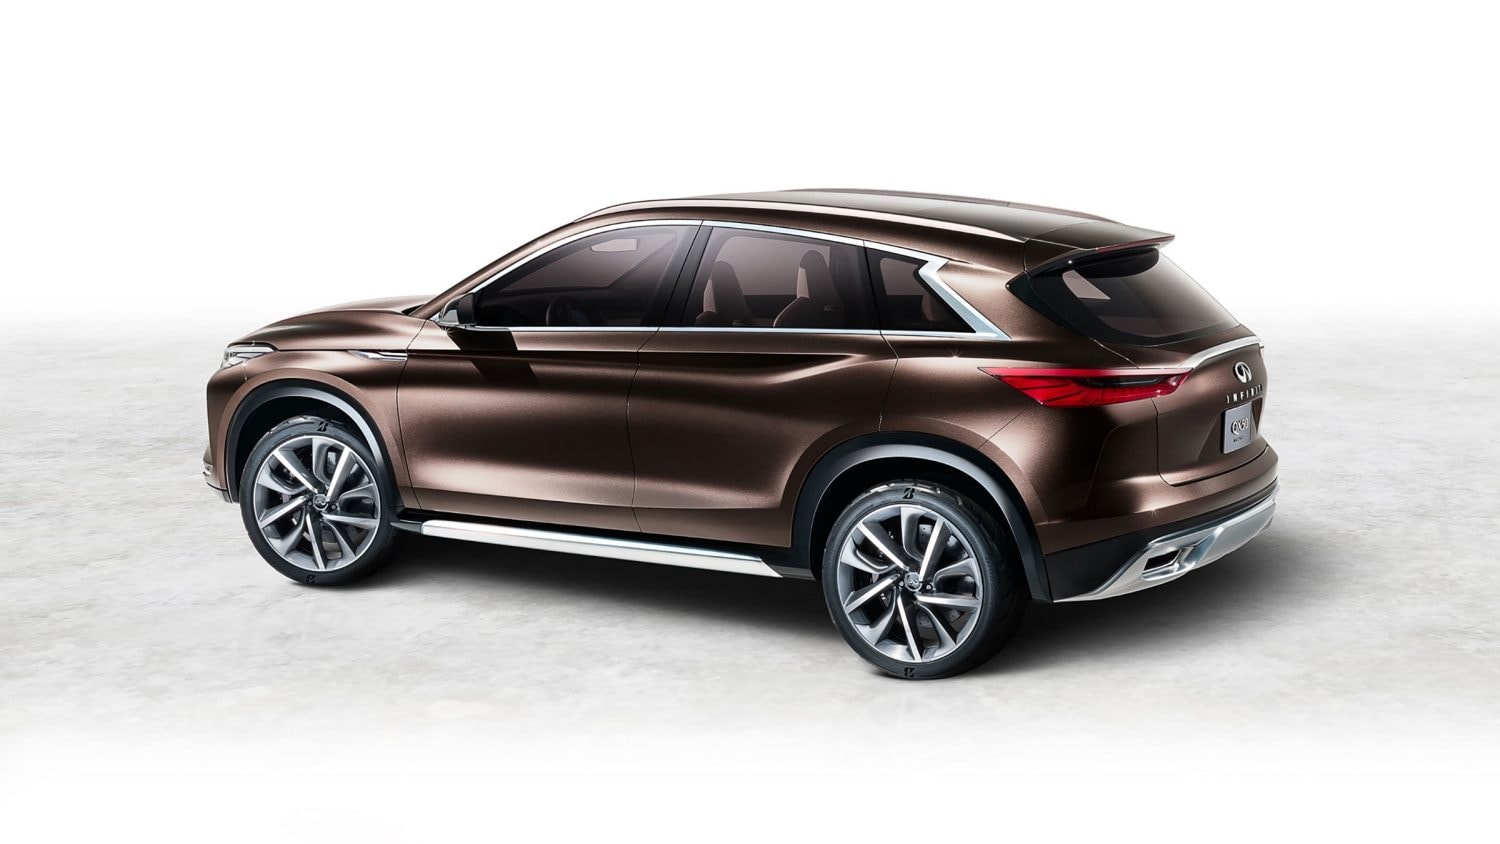 INFINITI QX50 Concept, shown in brown, rear profile